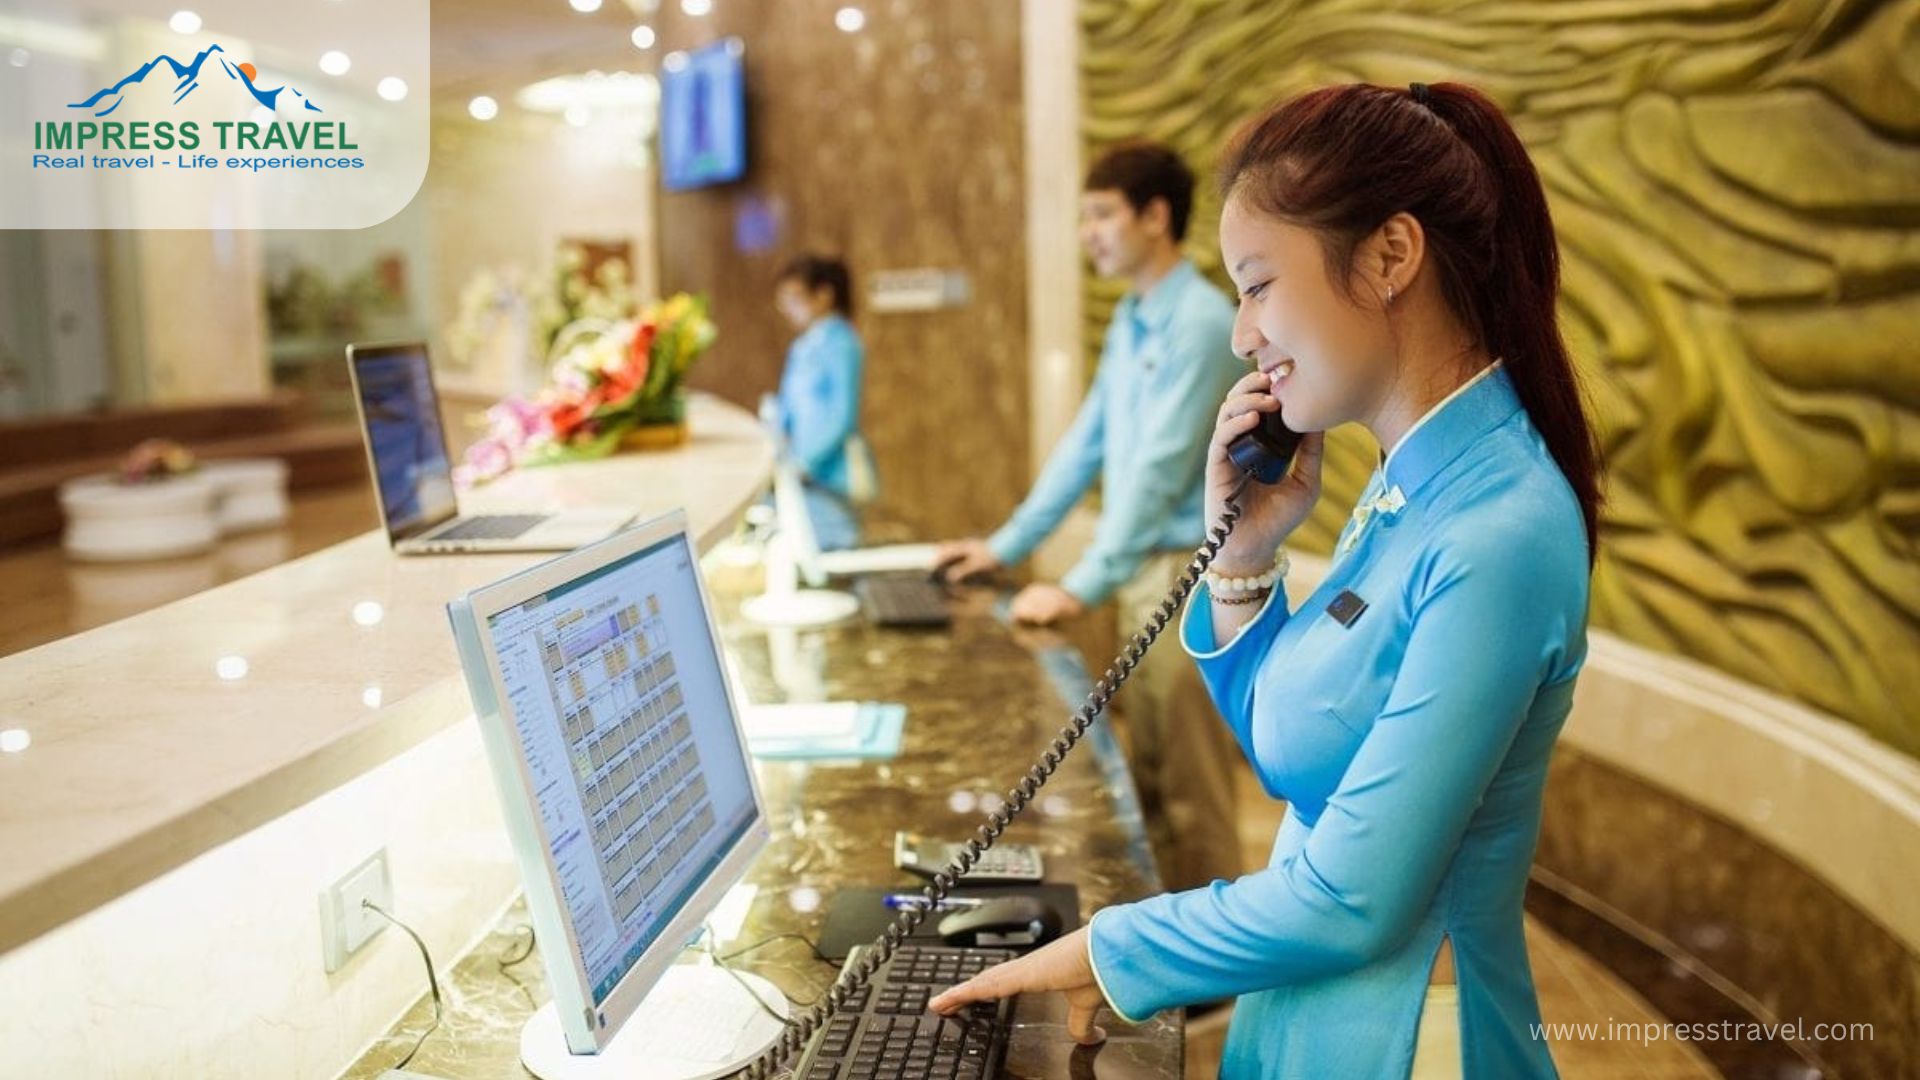 Hotel Concierge Services